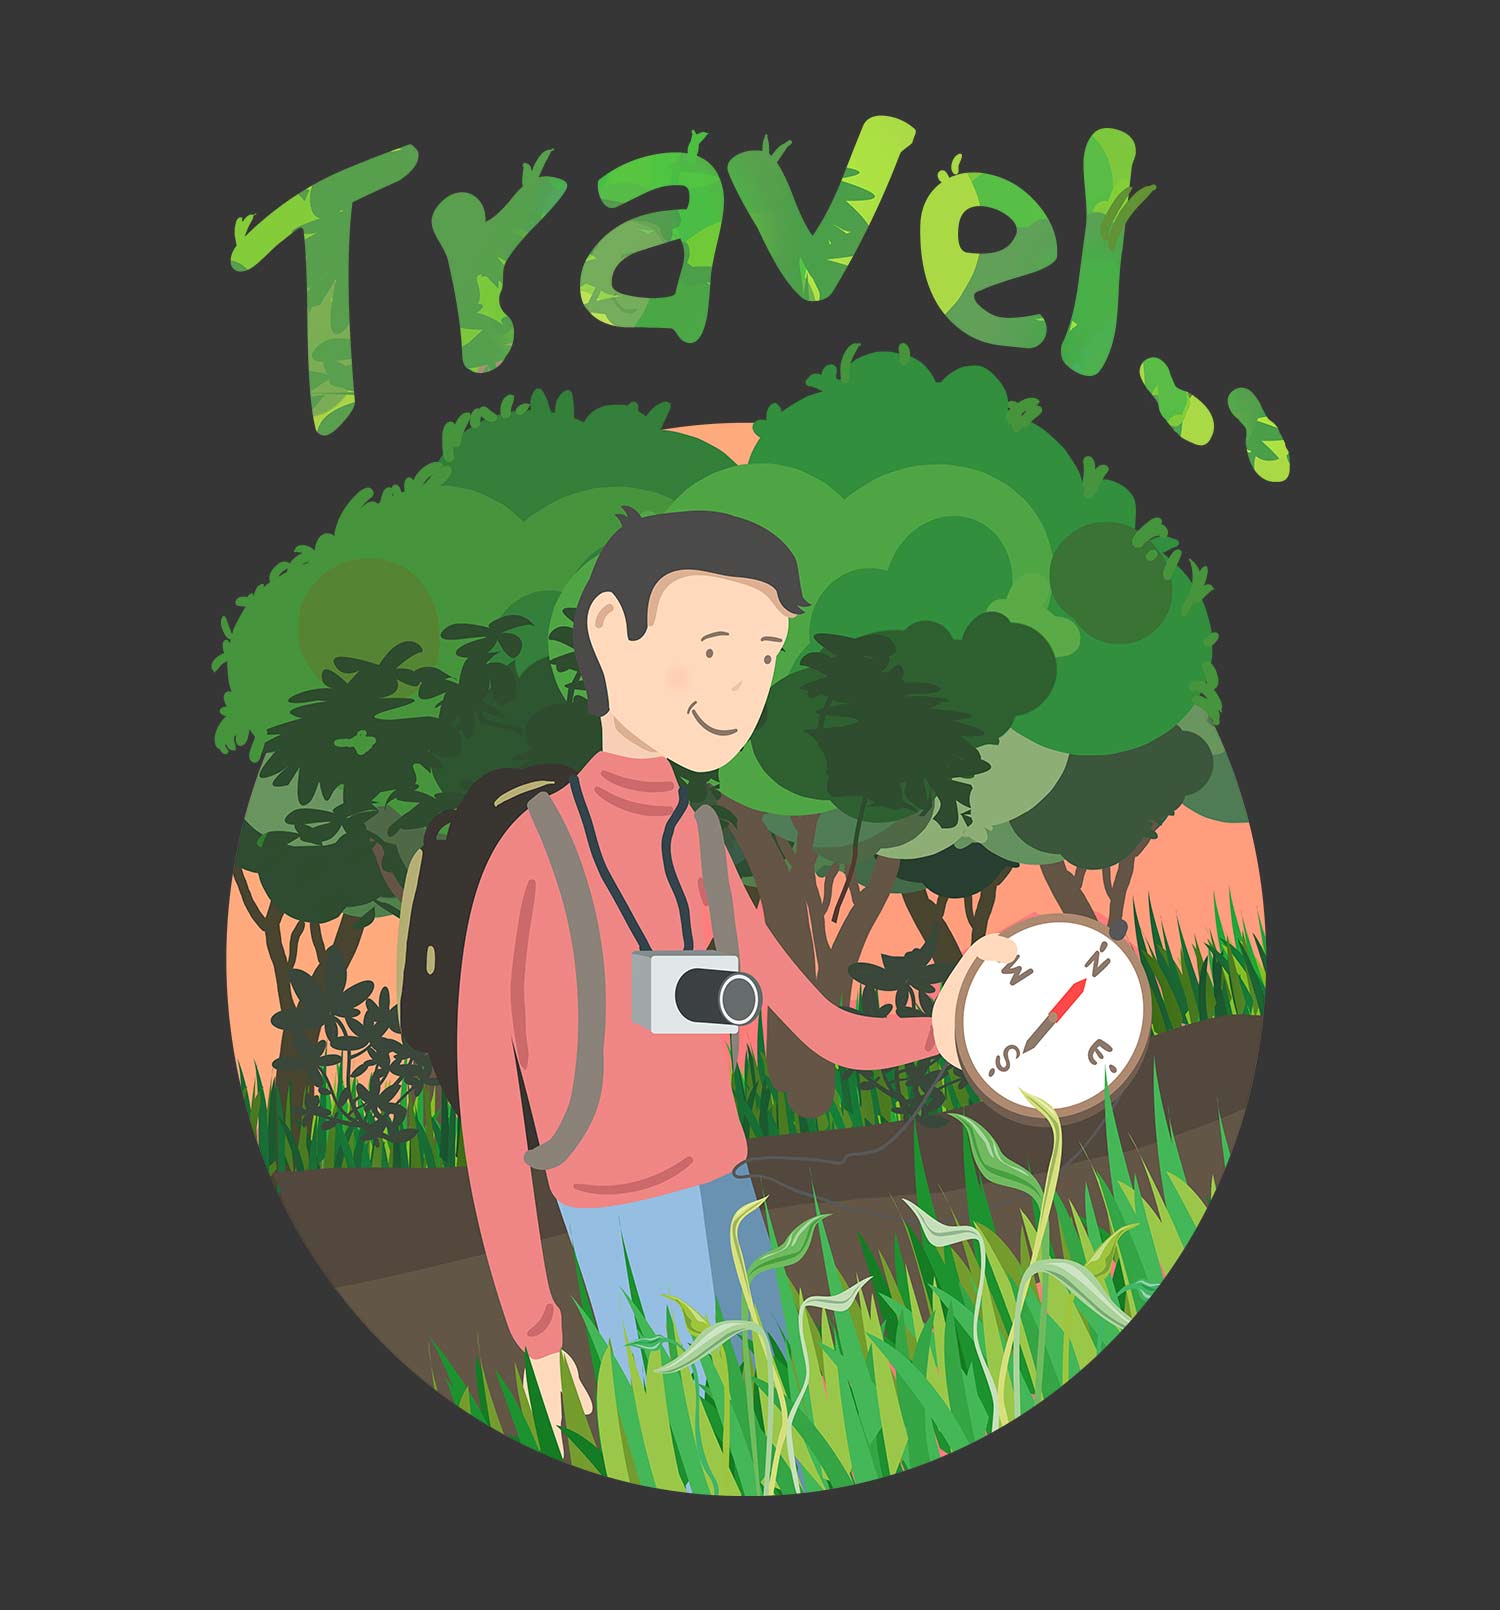 Travel Tee Online